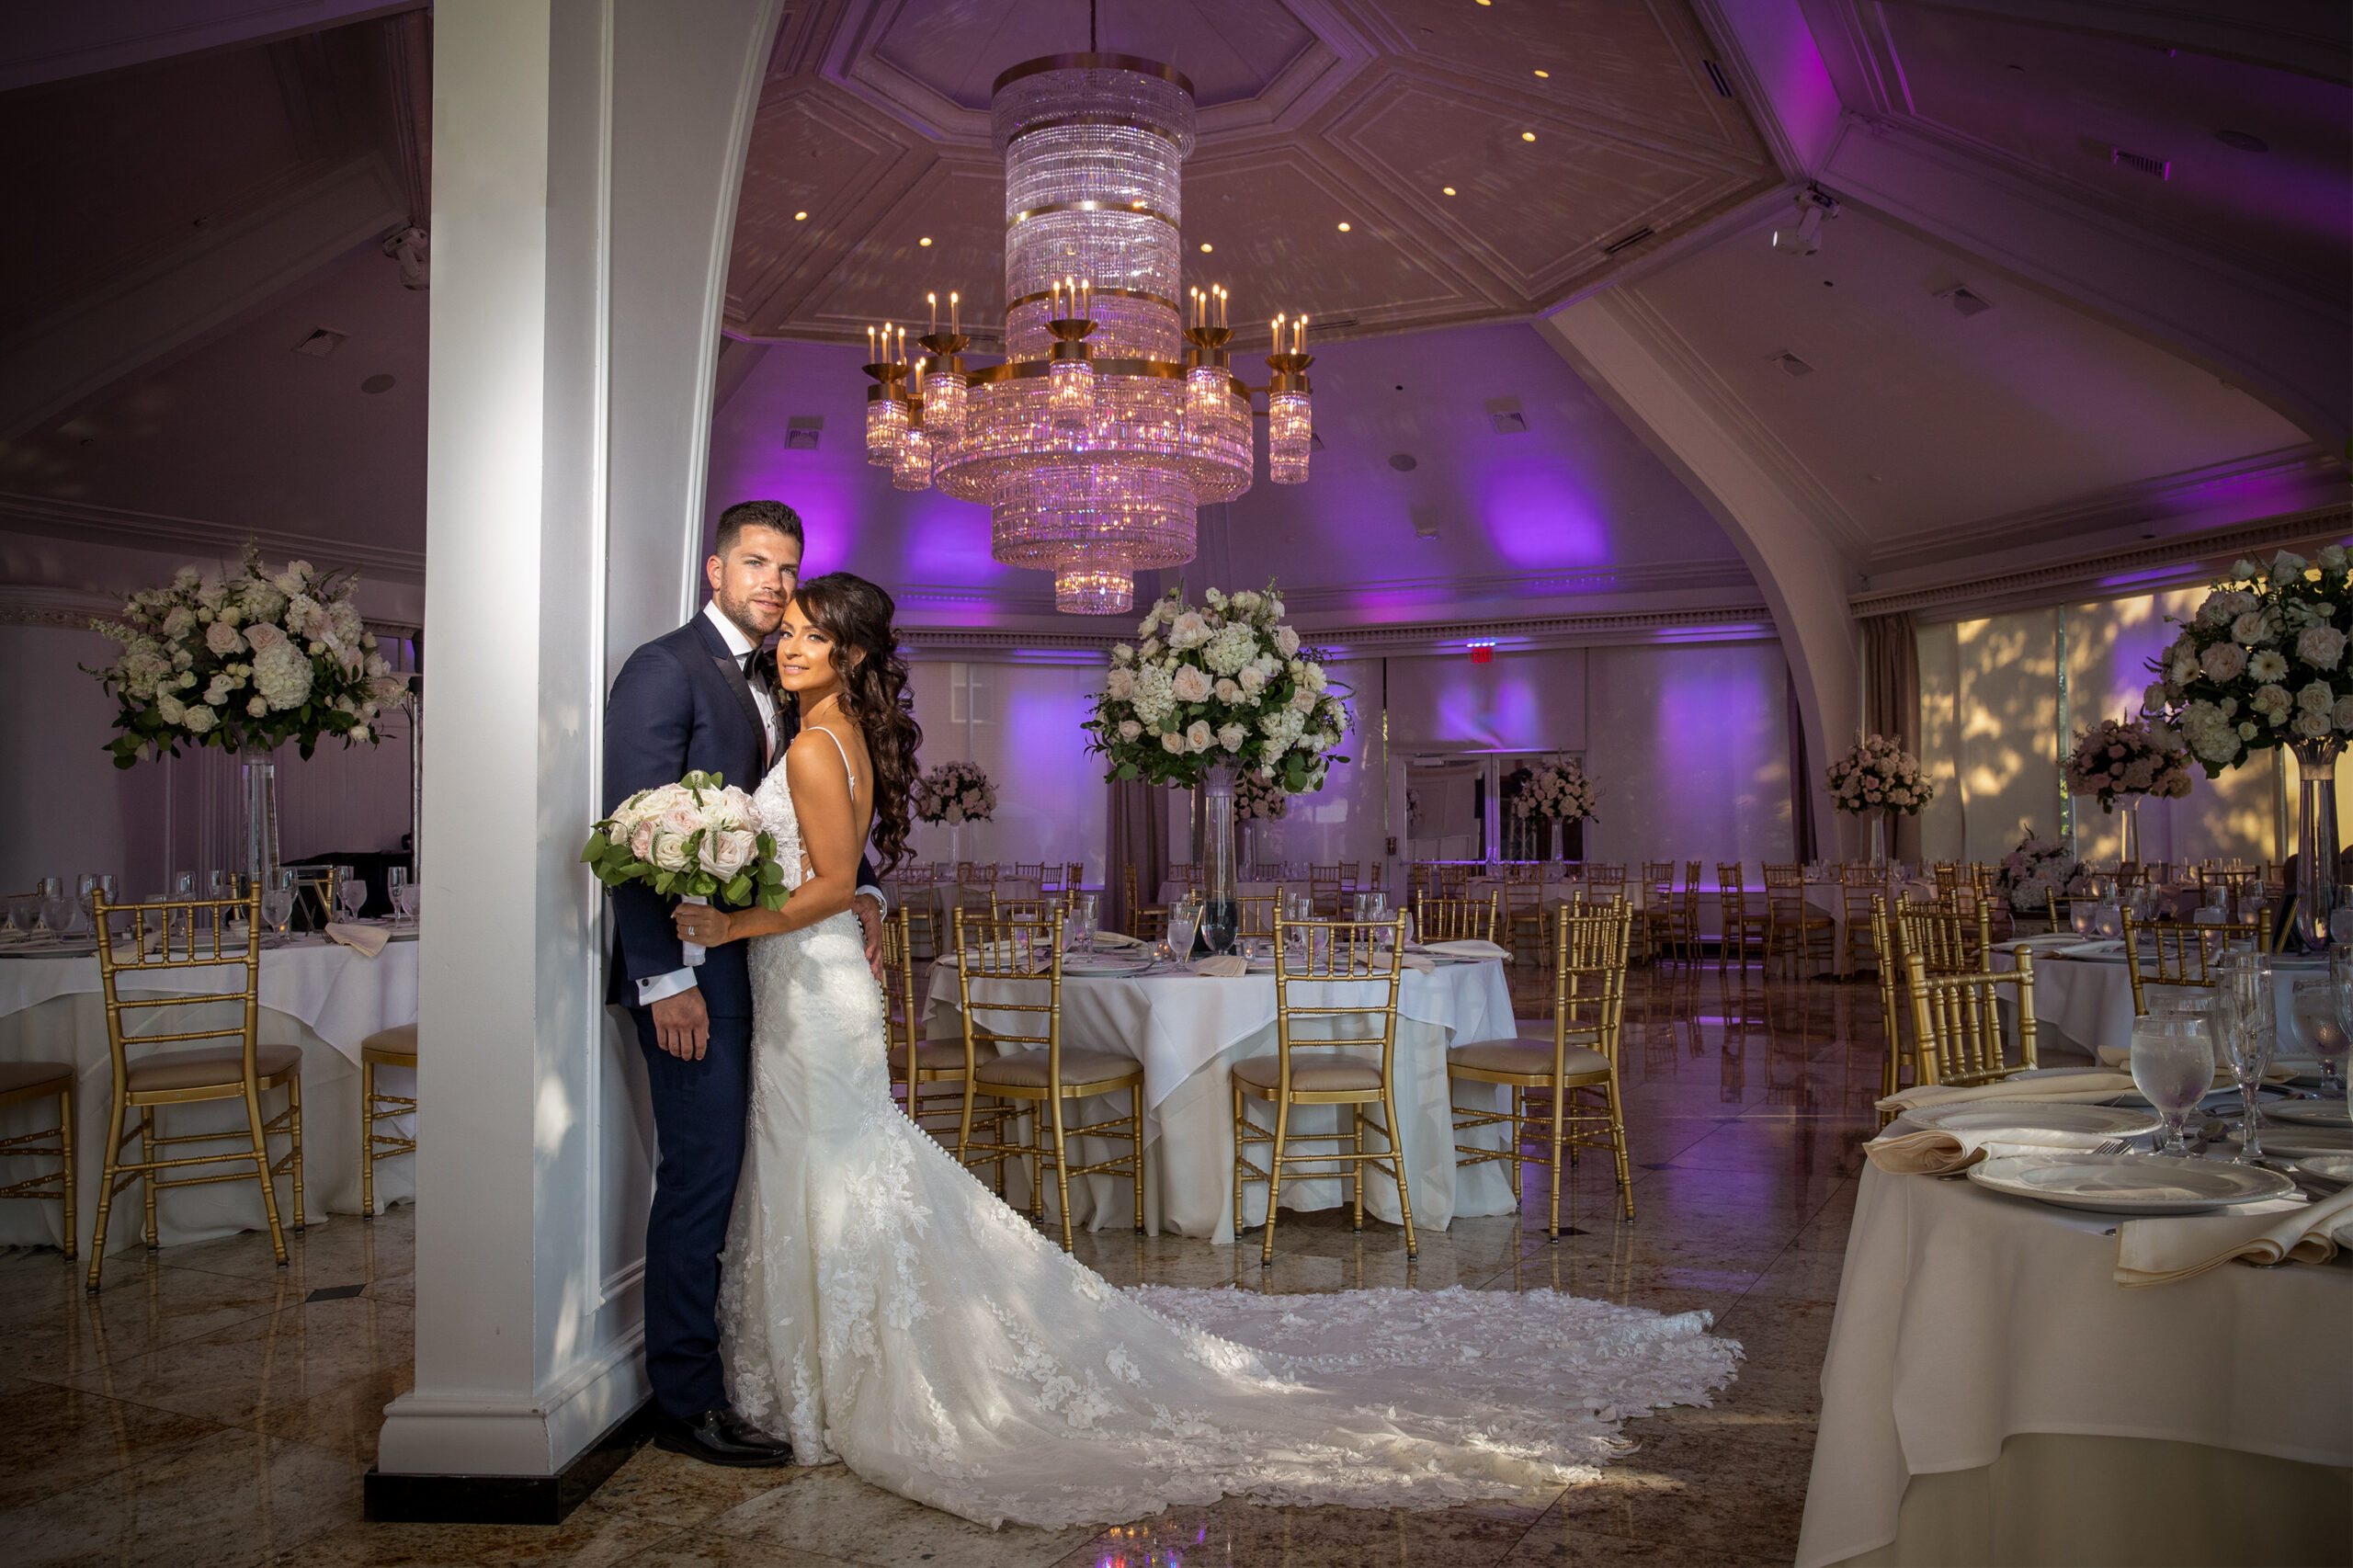 Bride and Groom in wedding venue ballroom